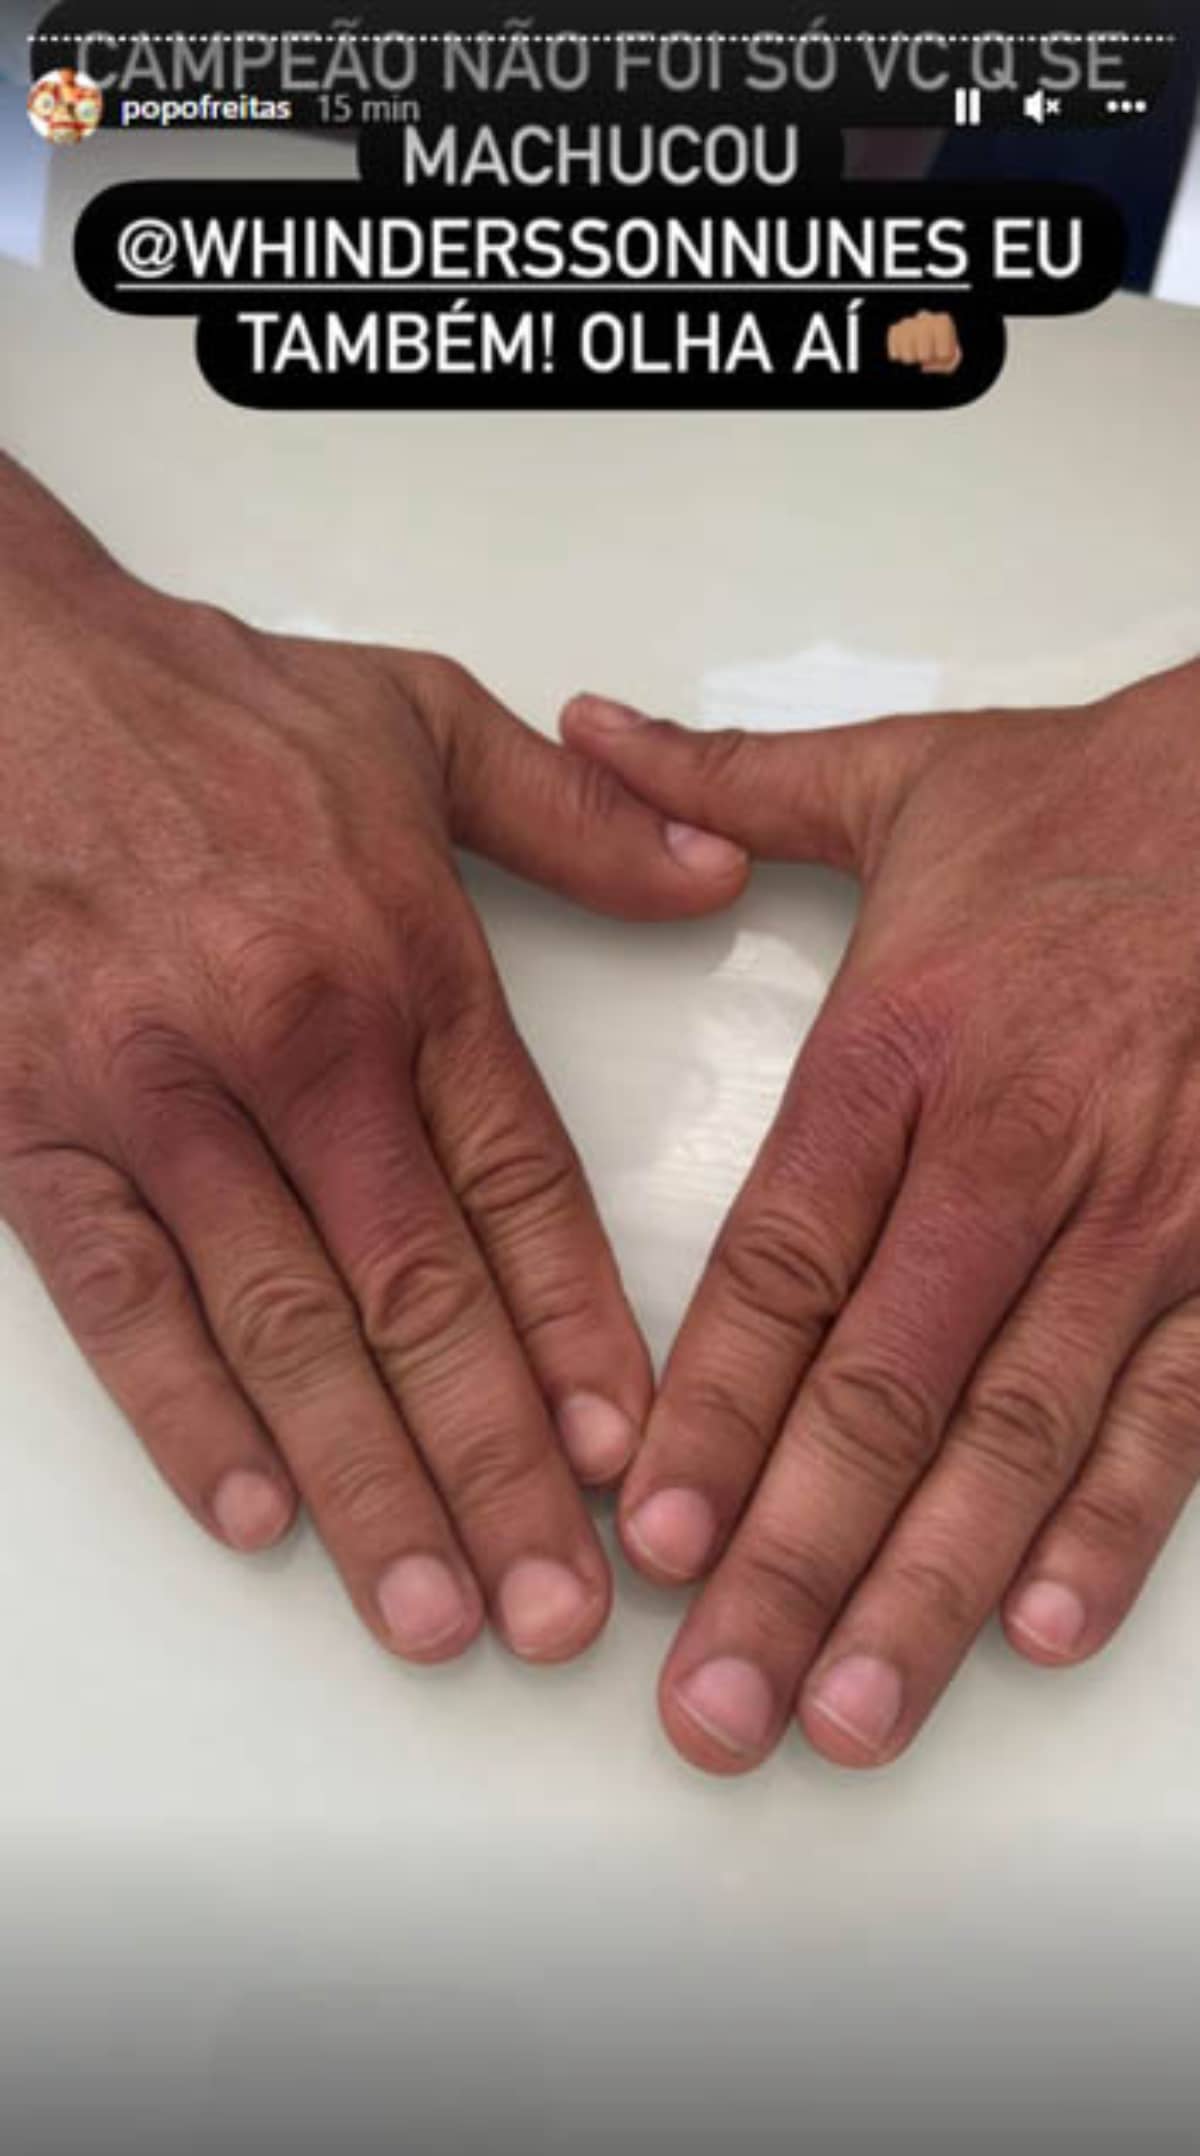 Popó mostrou as mãos roxas após a luta contra Whindersson. Foto: Reprodução / Instagram